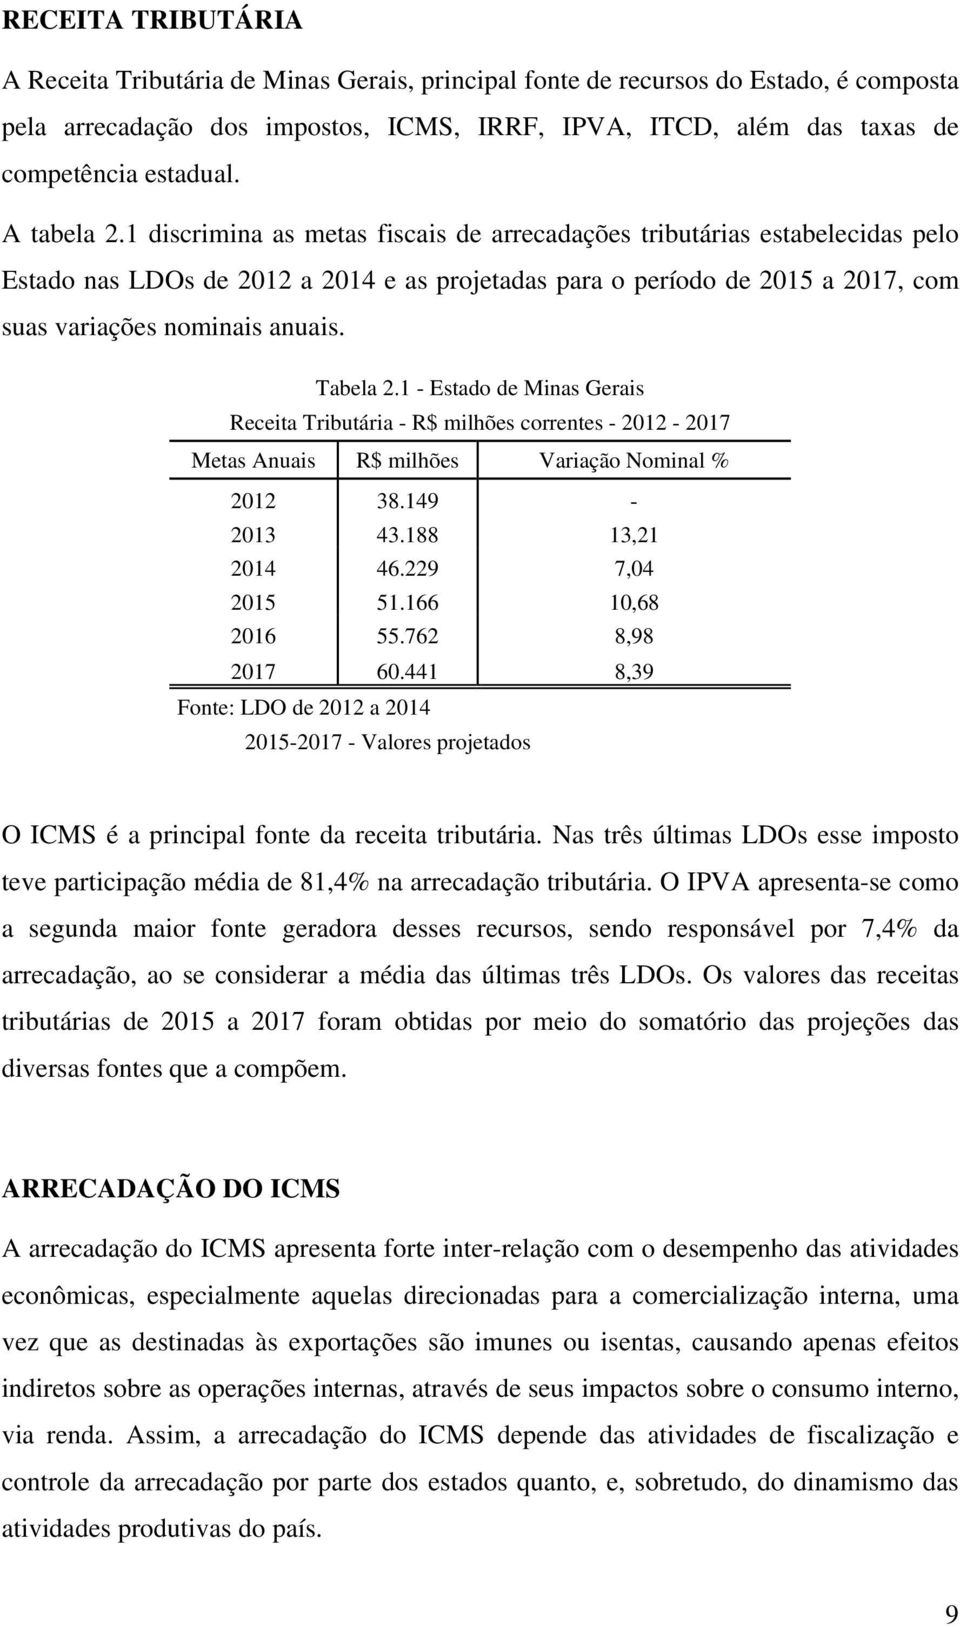 1 discrimina as metas fiscais de arrecadações tributárias estabelecidas pelo Estado nas LDOs de 2012 a 2014 e as projetadas para o período de 2015 a 2017, com suas variações nominais anuais. Tabela 2.